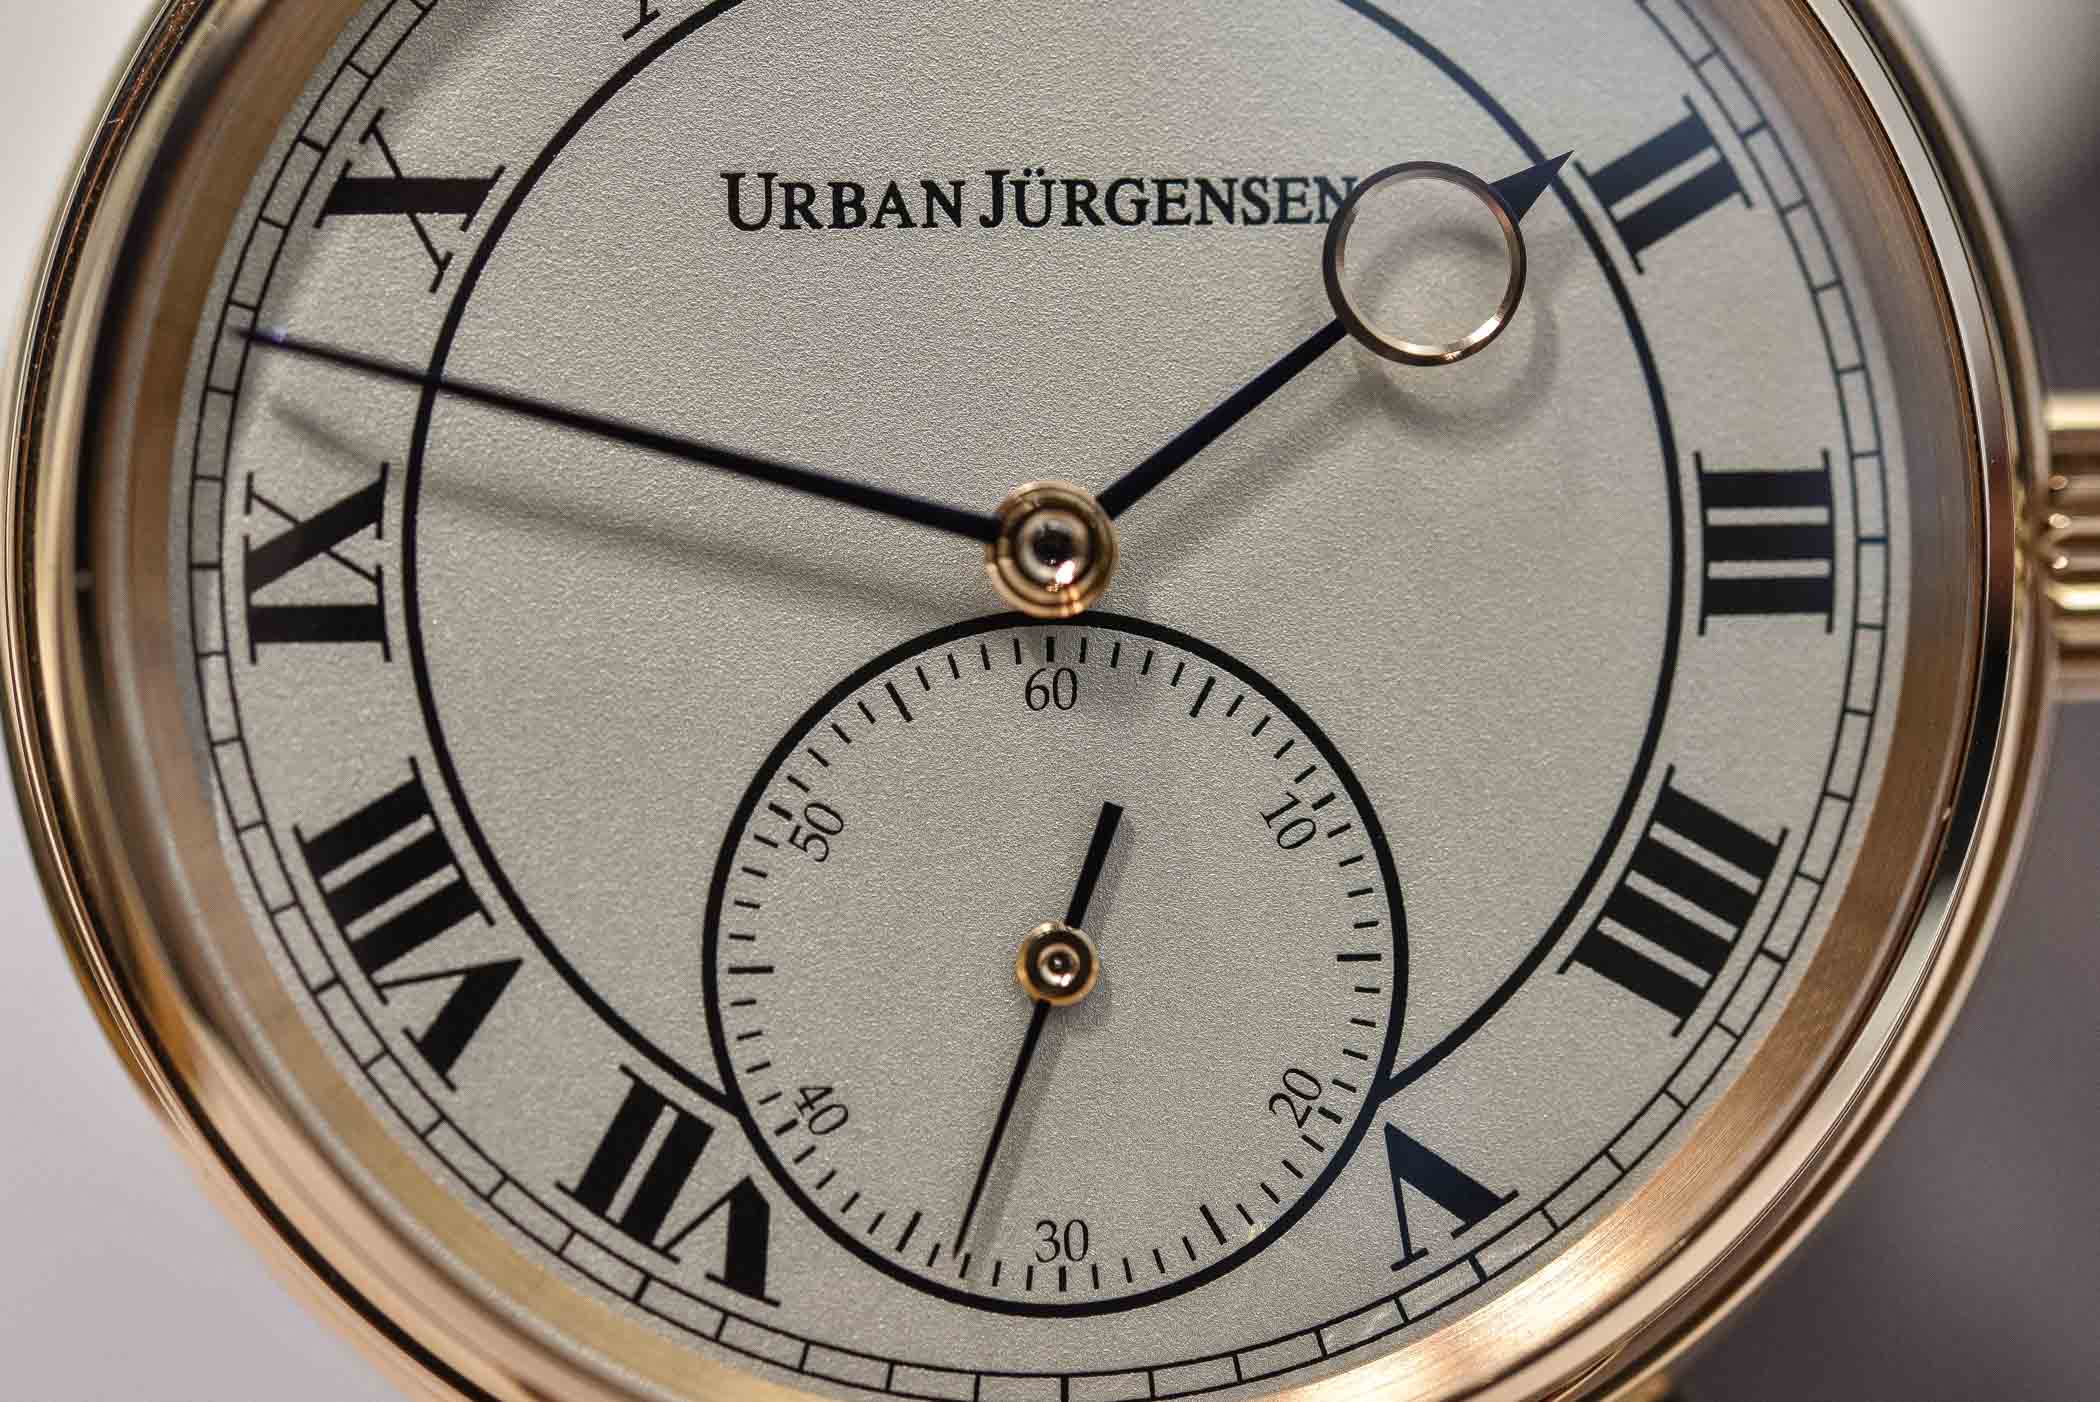 Urban Jurgensen reference 1142 Grenage dial